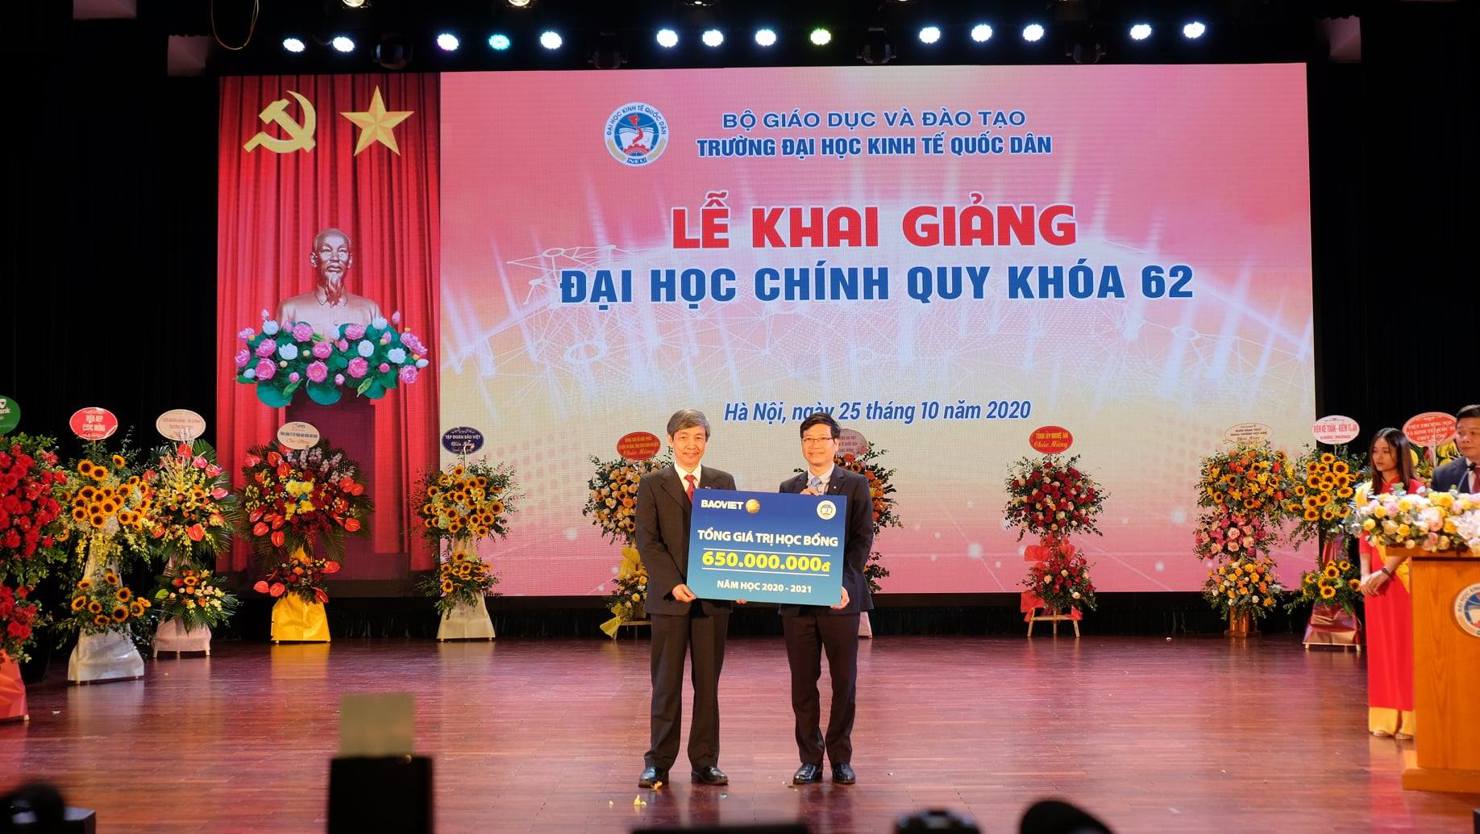 Tập đoàn Bảo Việt tặng học bổng cho sinh viên trường Ðại học Kinh tế Quốc dân với tổng số tiền lên tới 5,5 tỷ ðồng